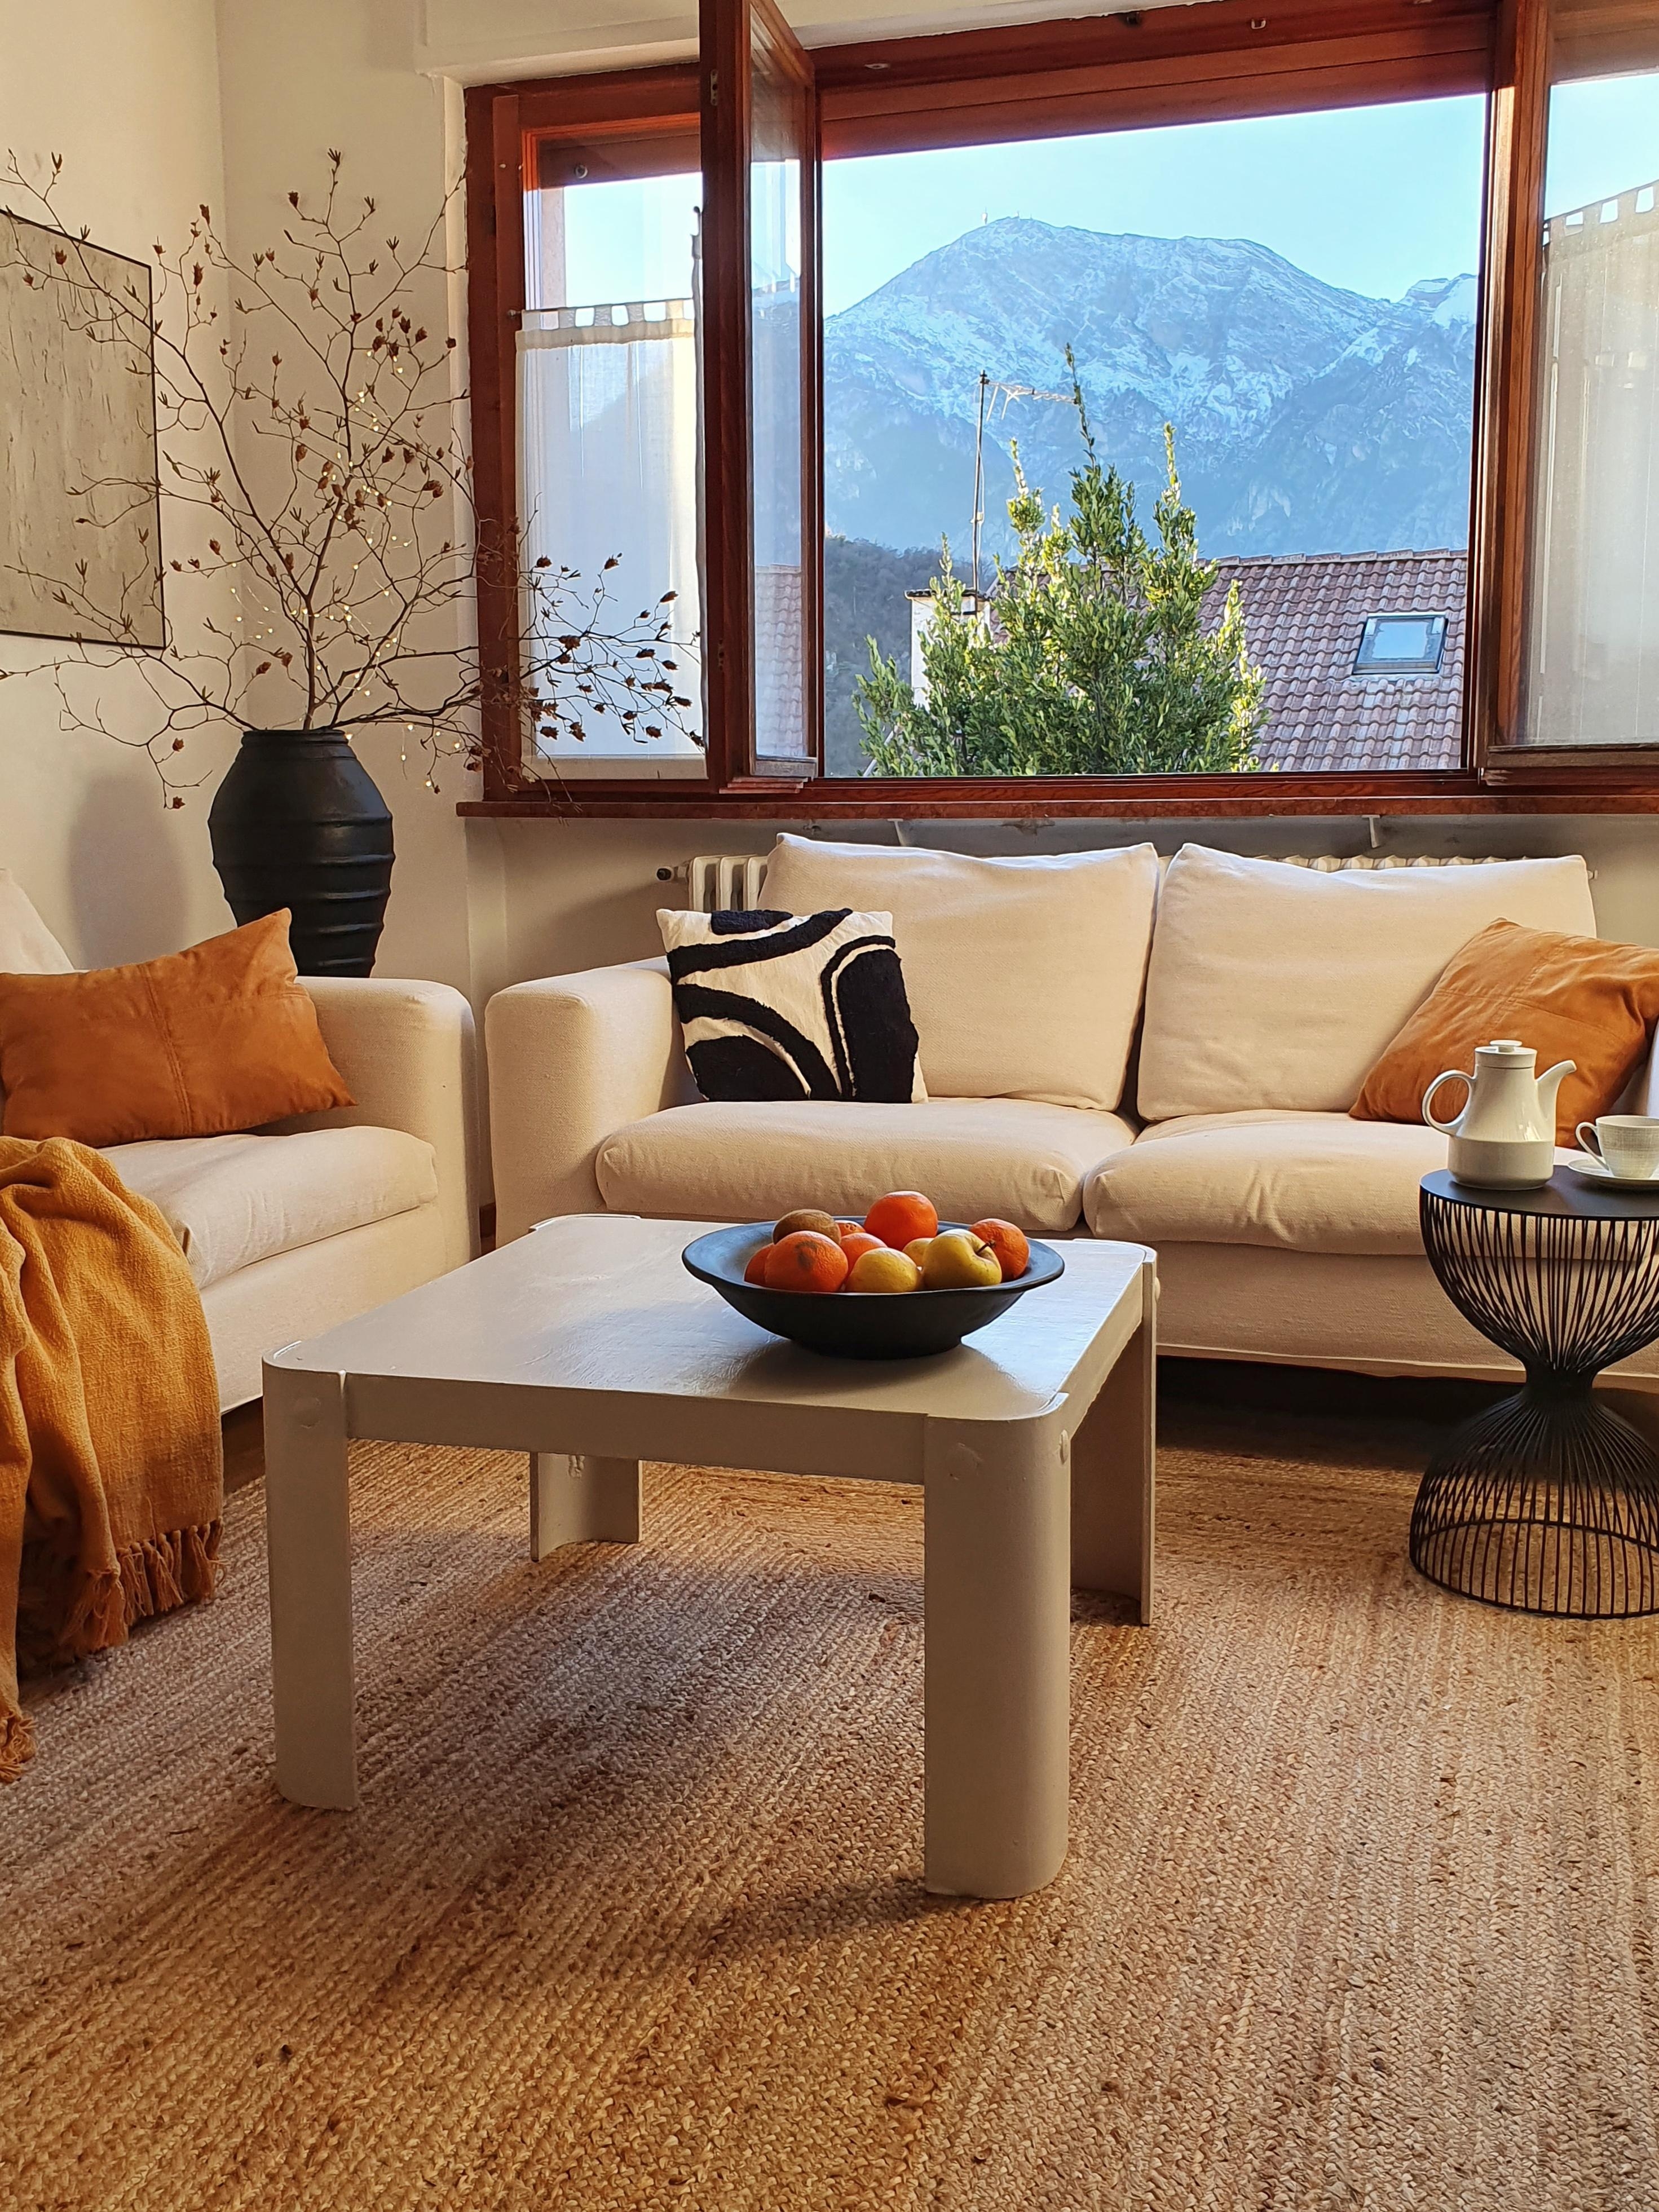 #wohnzimmer #couchliebt #couchstyle #altbauliebe #skandistyle 